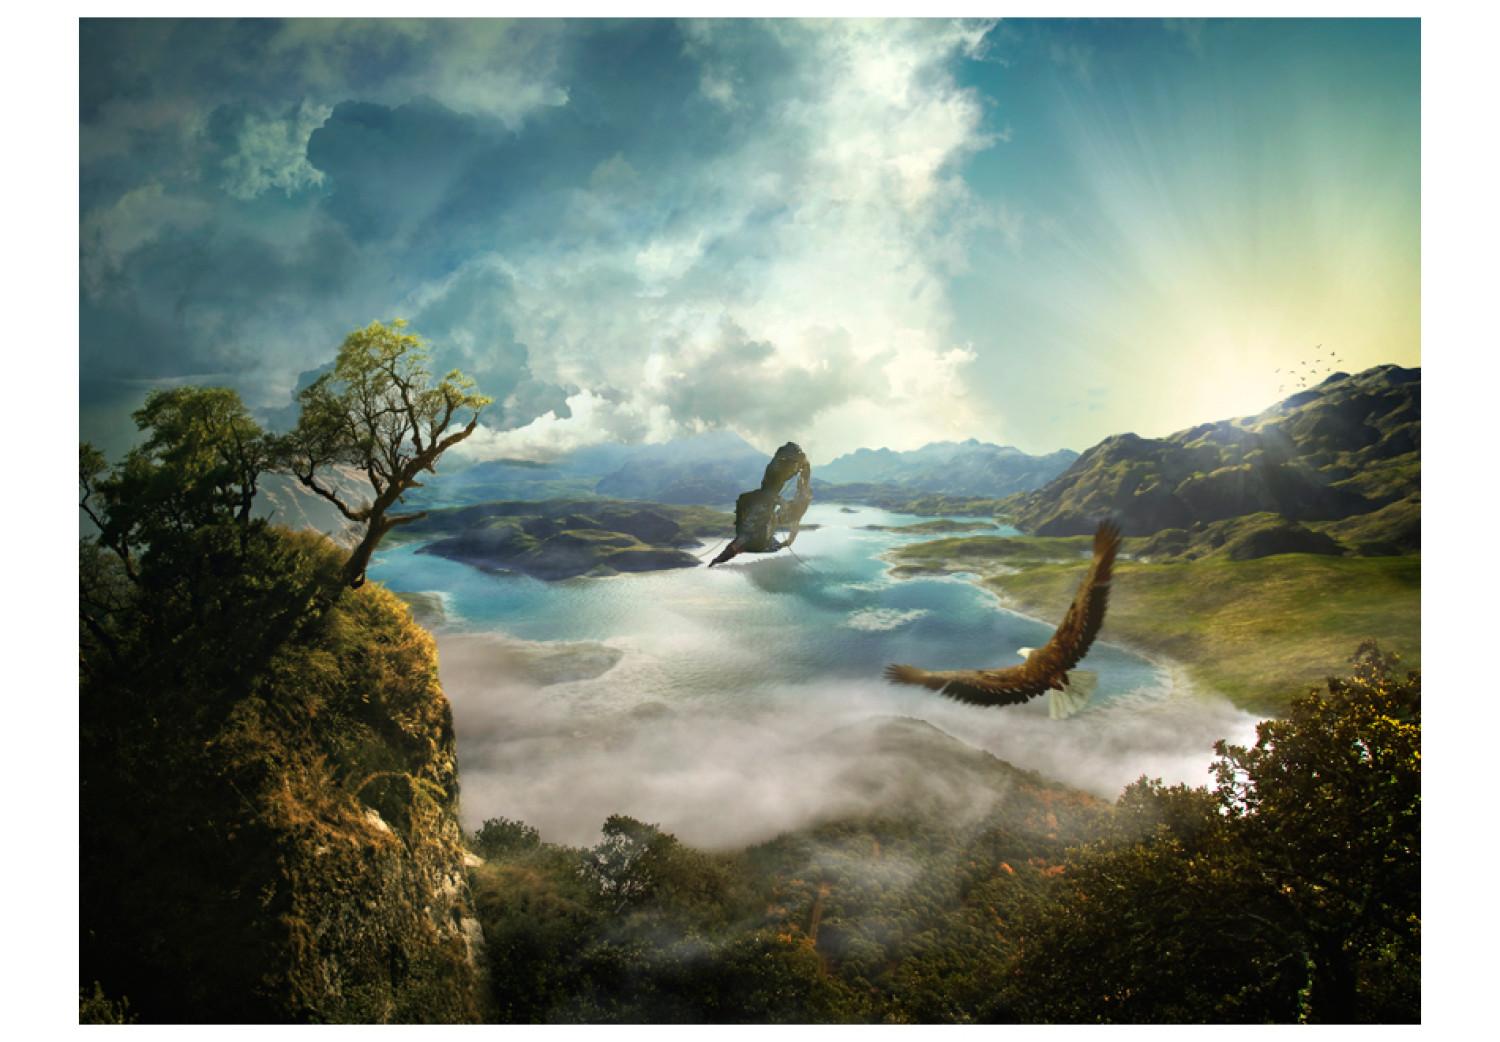 Fotomural a medida Fantasía - montañas verdes con pájaros volando sobre lago azul